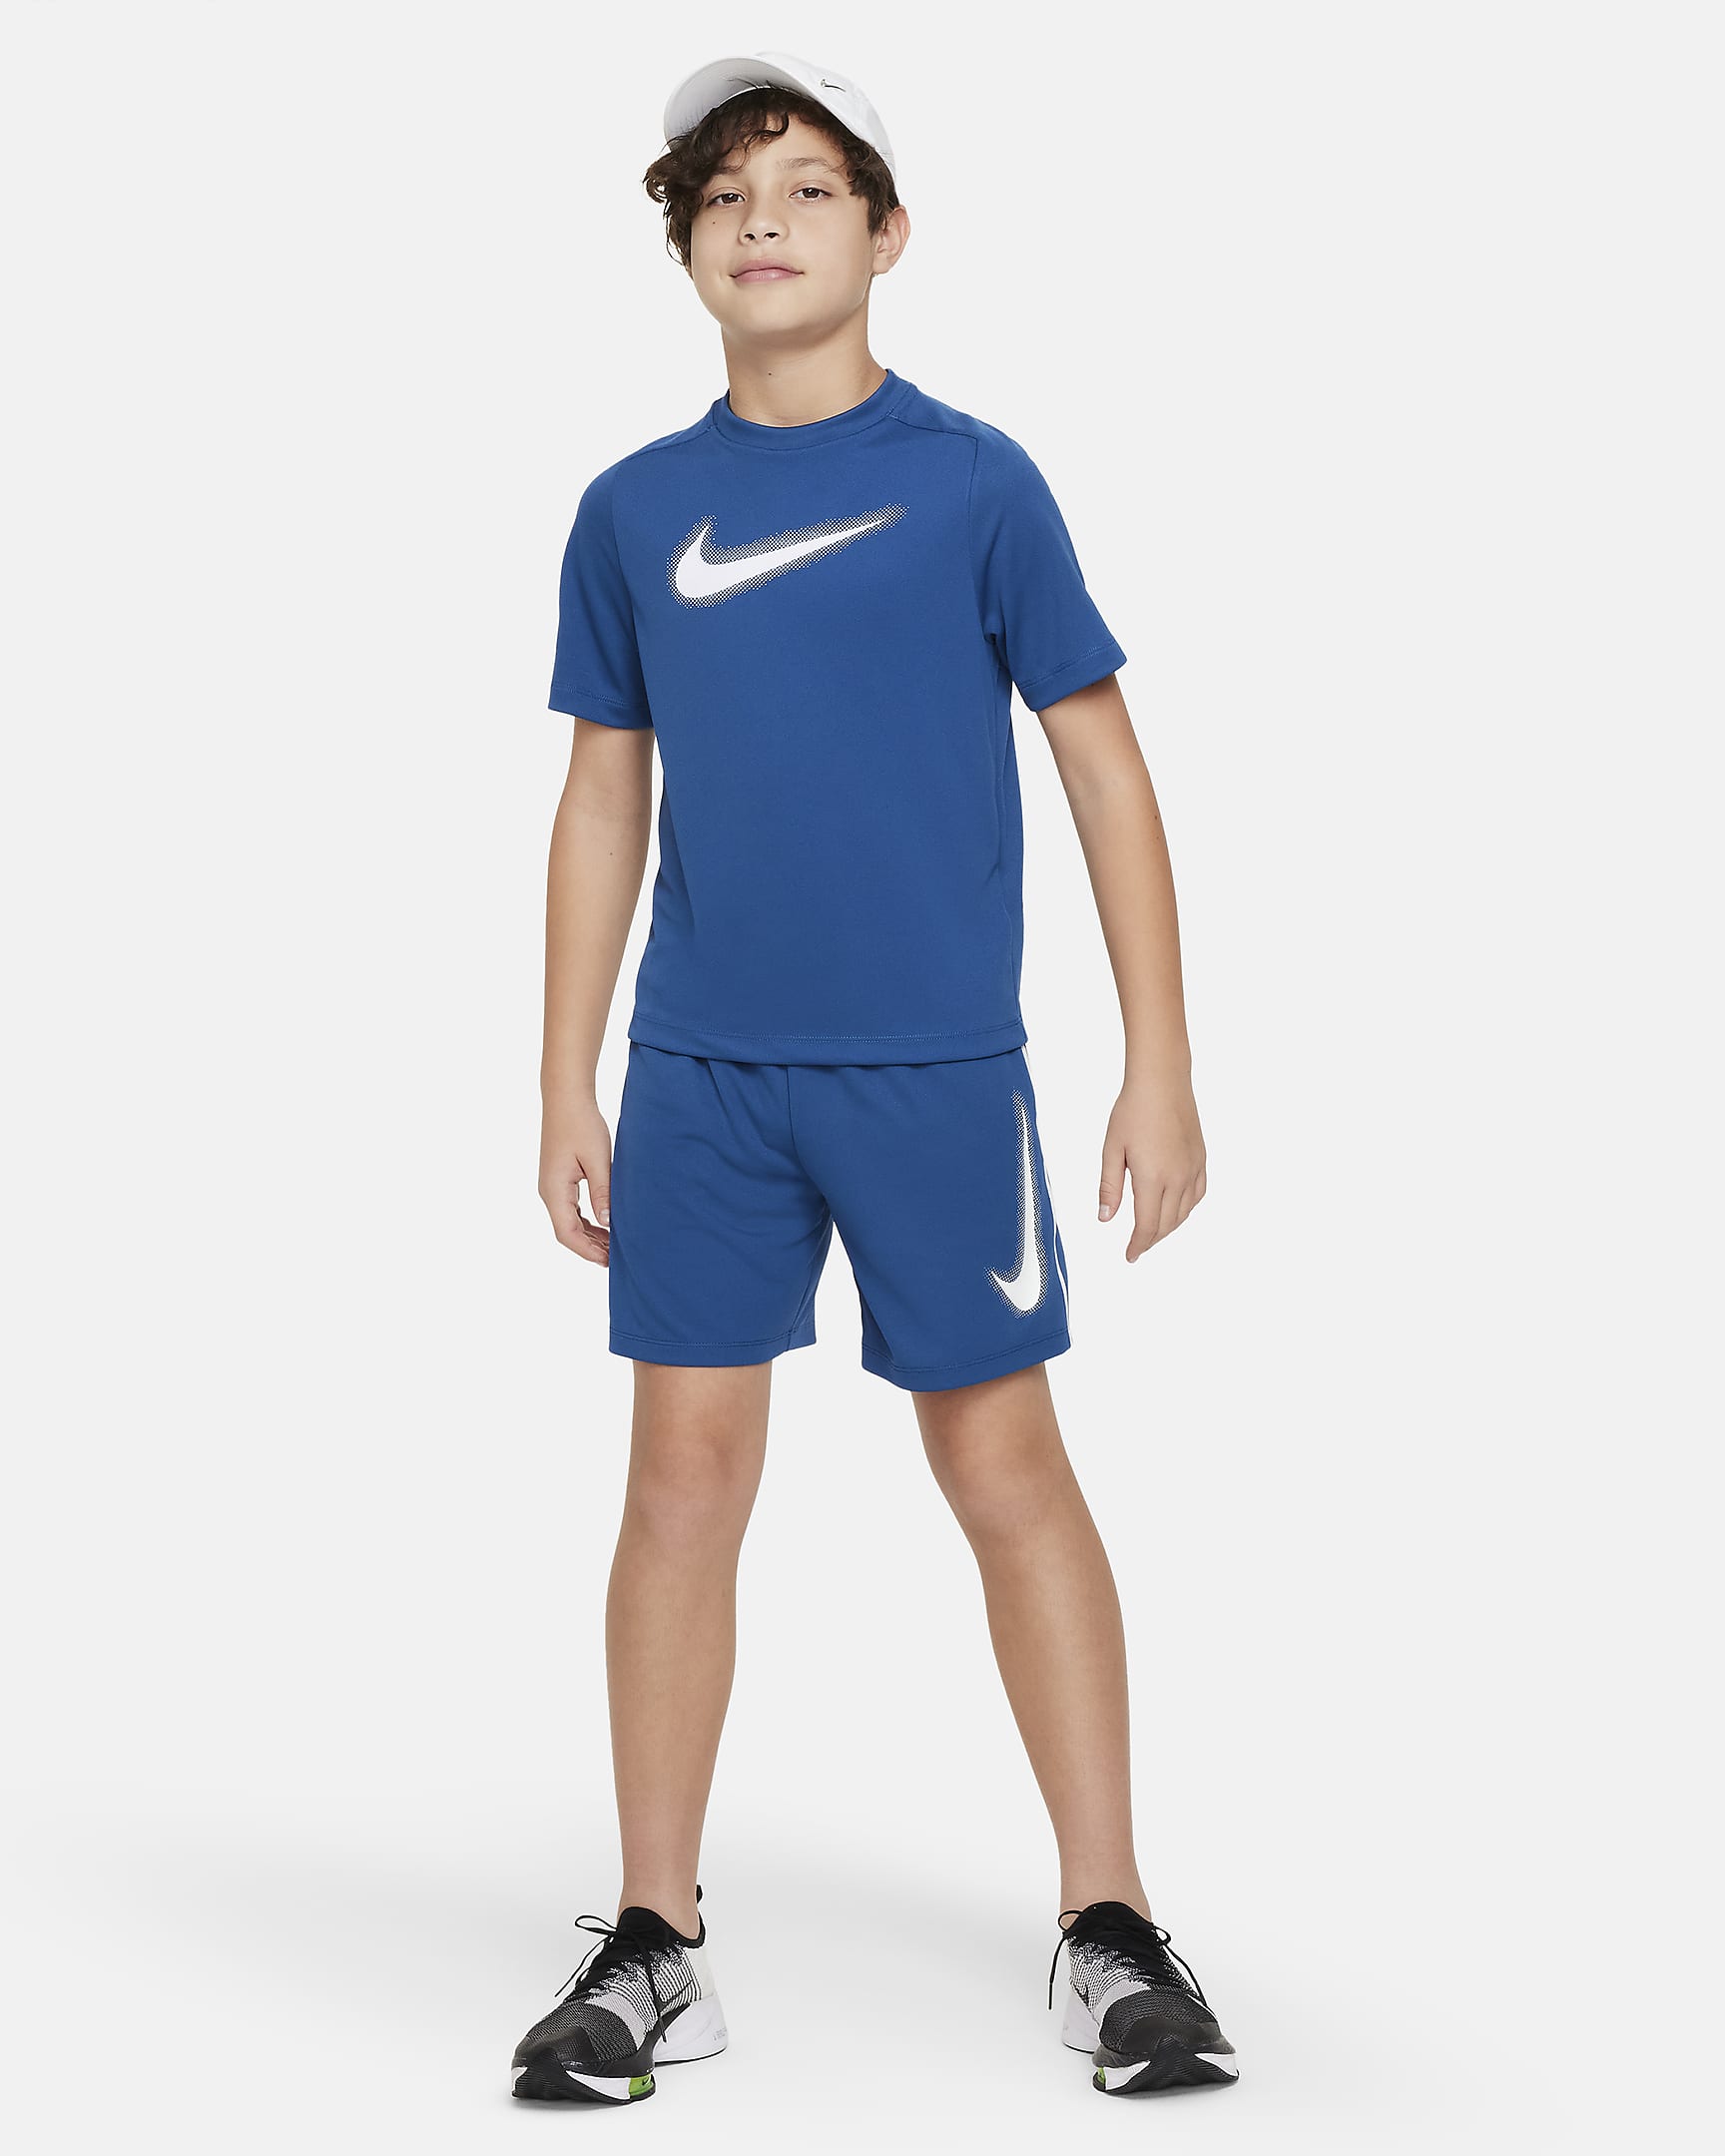 Nike Multi Older Kids' (Boys') Dri-FIT Graphic Training Top. Nike SE